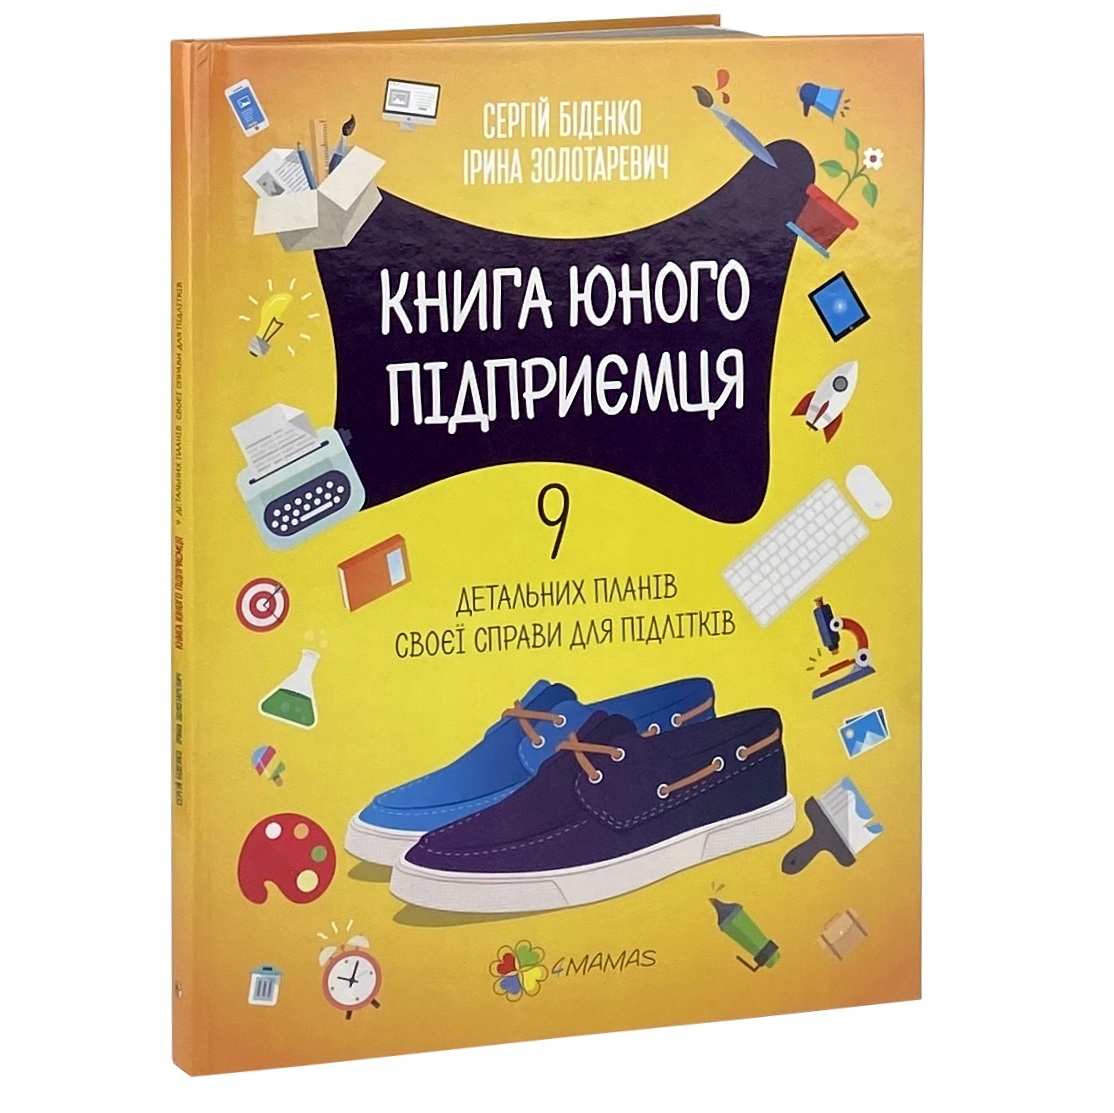 Книга юного підприємця. 9 детальних планів своєї справи для підлітків. Автор — Сергій Бідненко, Ірина Золотаревич. 